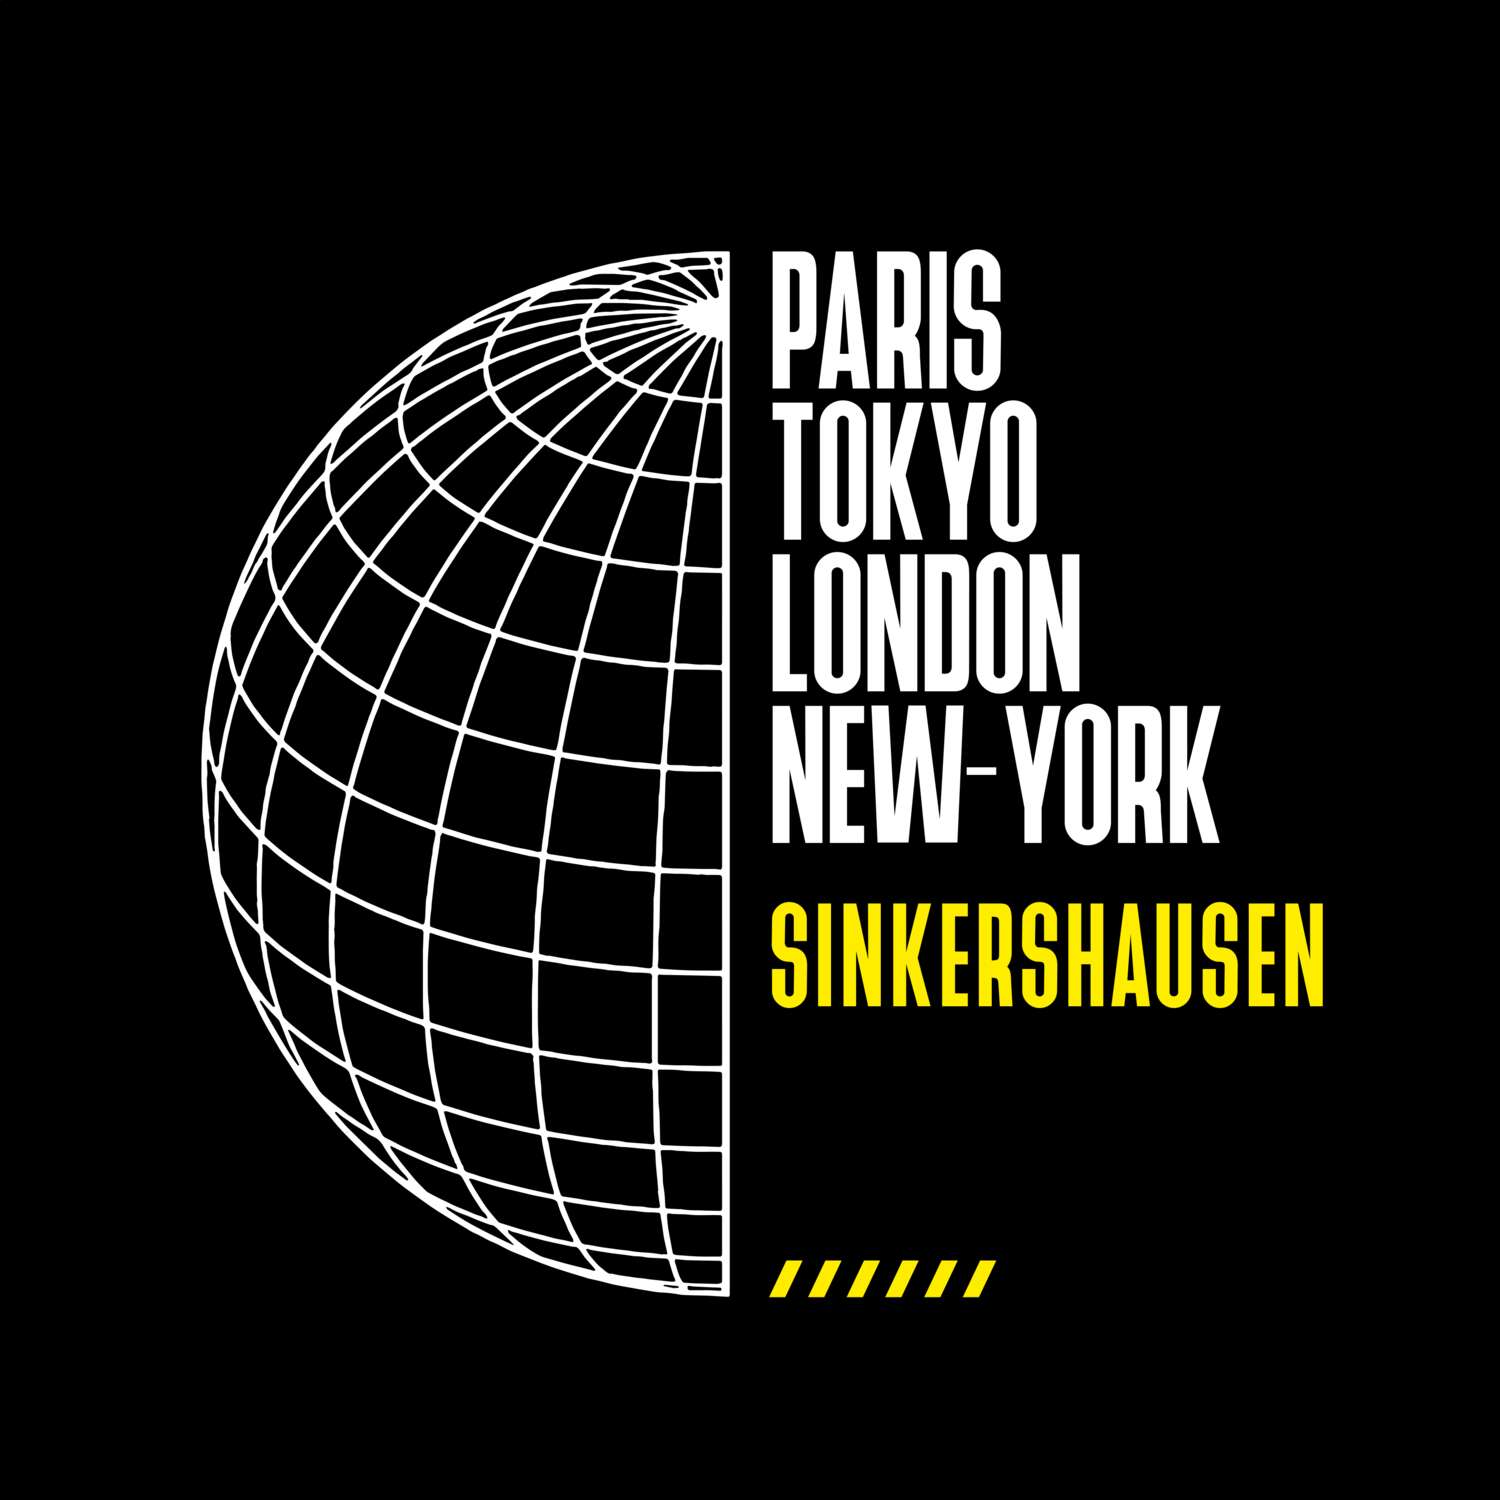 Sinkershausen T-Shirt »Paris Tokyo London«